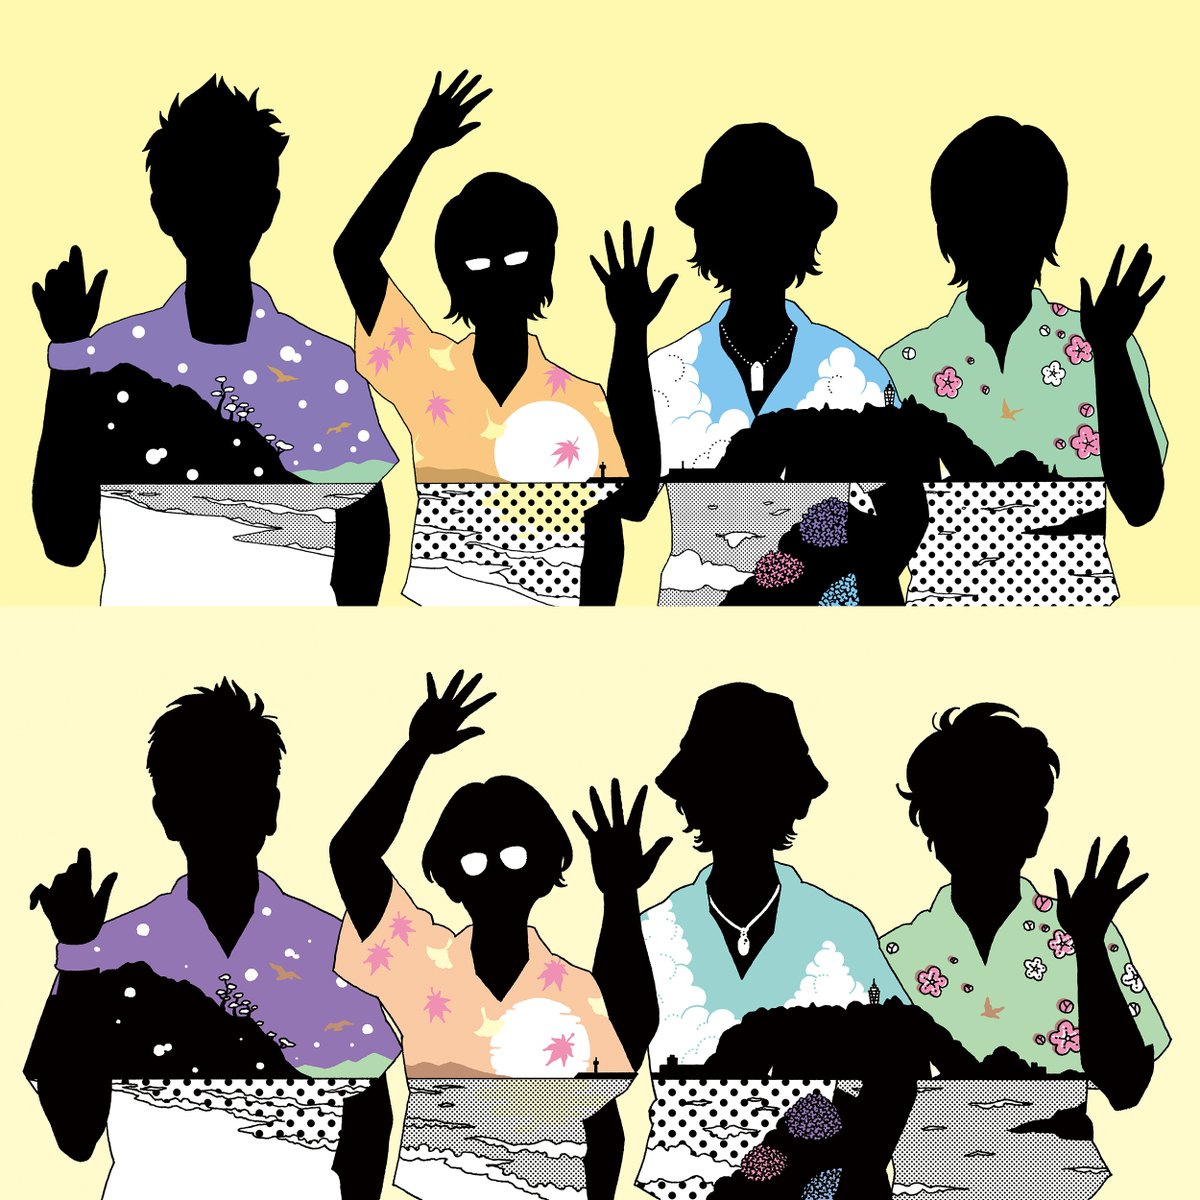 short hair simple background shirt multiple girls black hair upper body short sleeves  illustration images